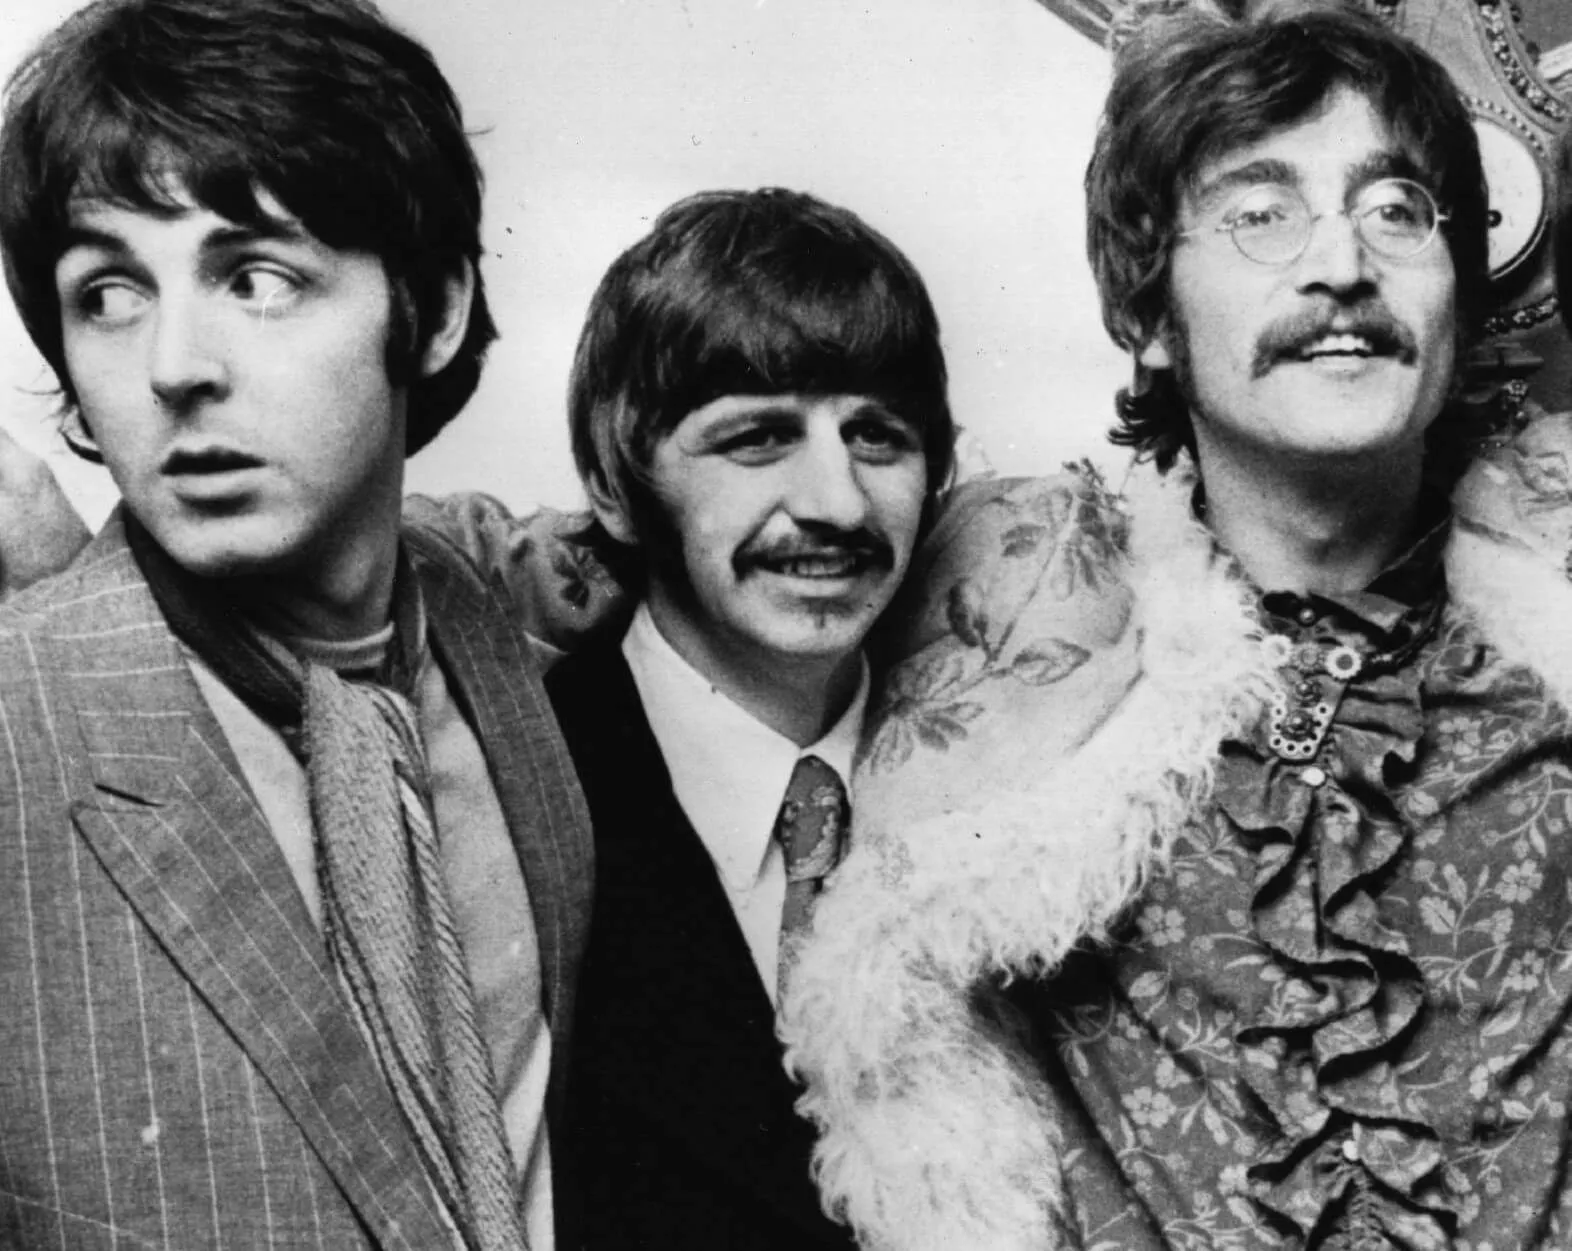 The Beatles' Paul McCartney, Ringo Starr, and John Lennon in black-and-white